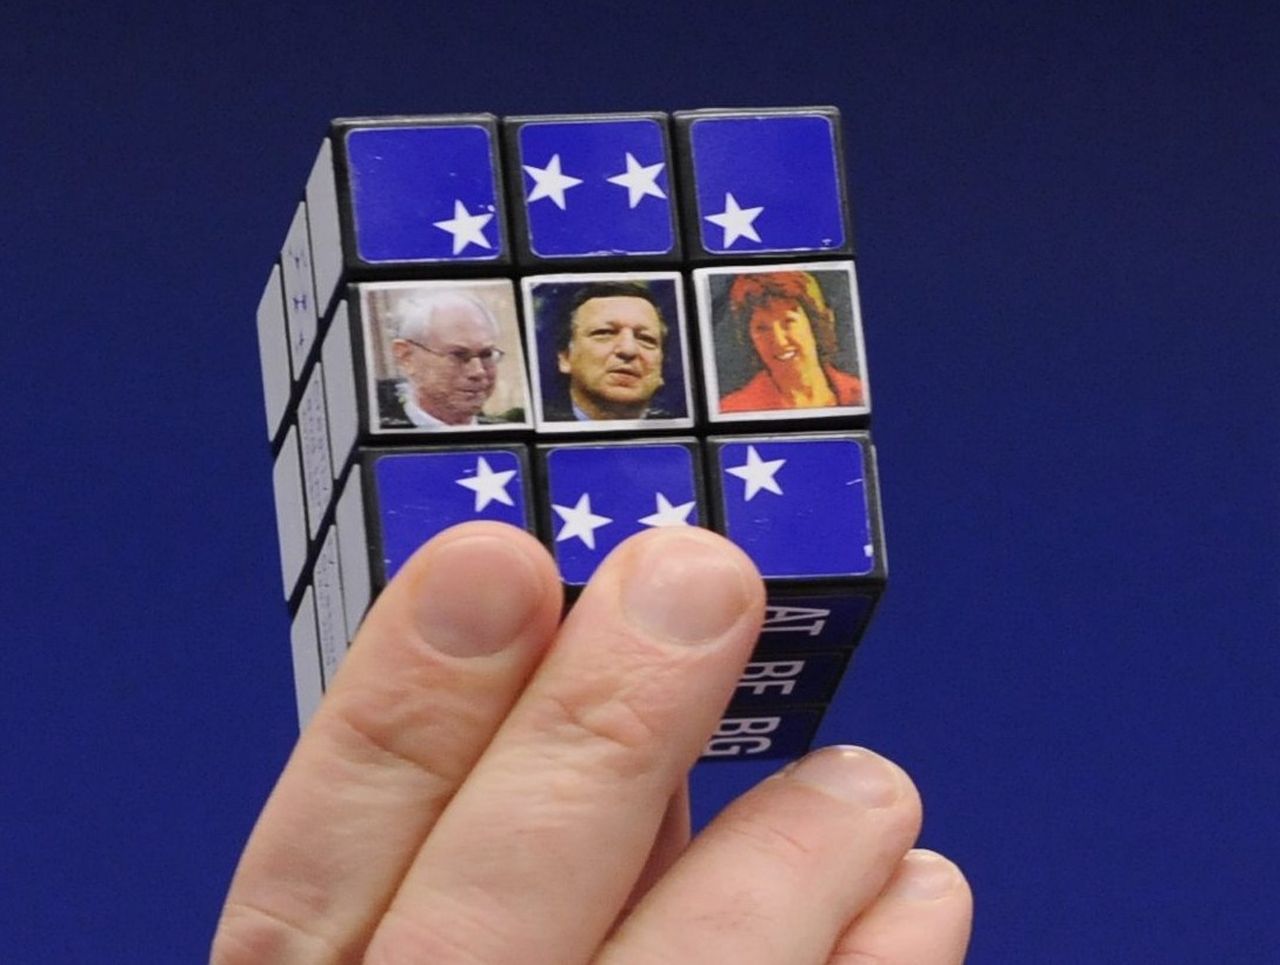 Großansicht eines Rubik-Würfels in einer Hand. In den neun Kästchen des Würfels, die man in der Vorderansicht sieht, sind in der oberen und unteren Zeile weiße EU-Sterne auf blauem Hintergrund zu sehen. Die drei Kästchen der mittleren Reihe zeigen Bilder von Herman van Rompuy, Jose Manuel Barroso und Catherine Ashton.